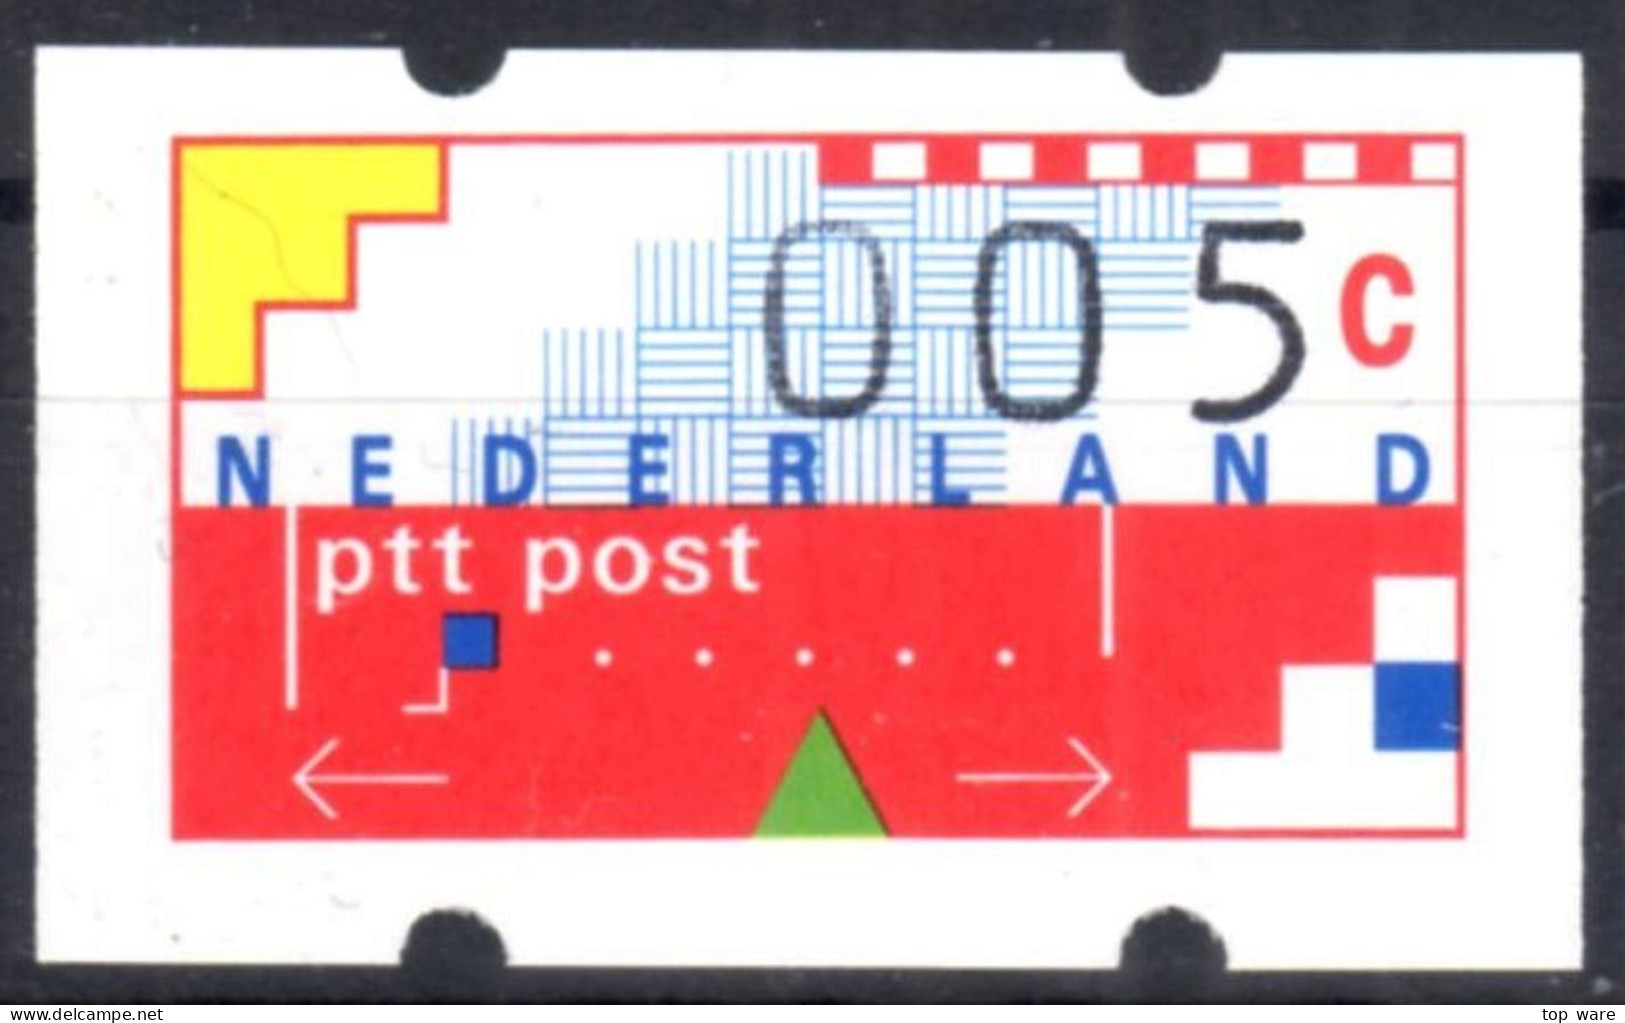 Niederlande Nederland ATM 1 Kleinstwert 5 Cent Postfrisch Mit Quittung Frama Klüssendorf Automatenmarken Etiquetas - Timbres De Distributeurs [ATM]